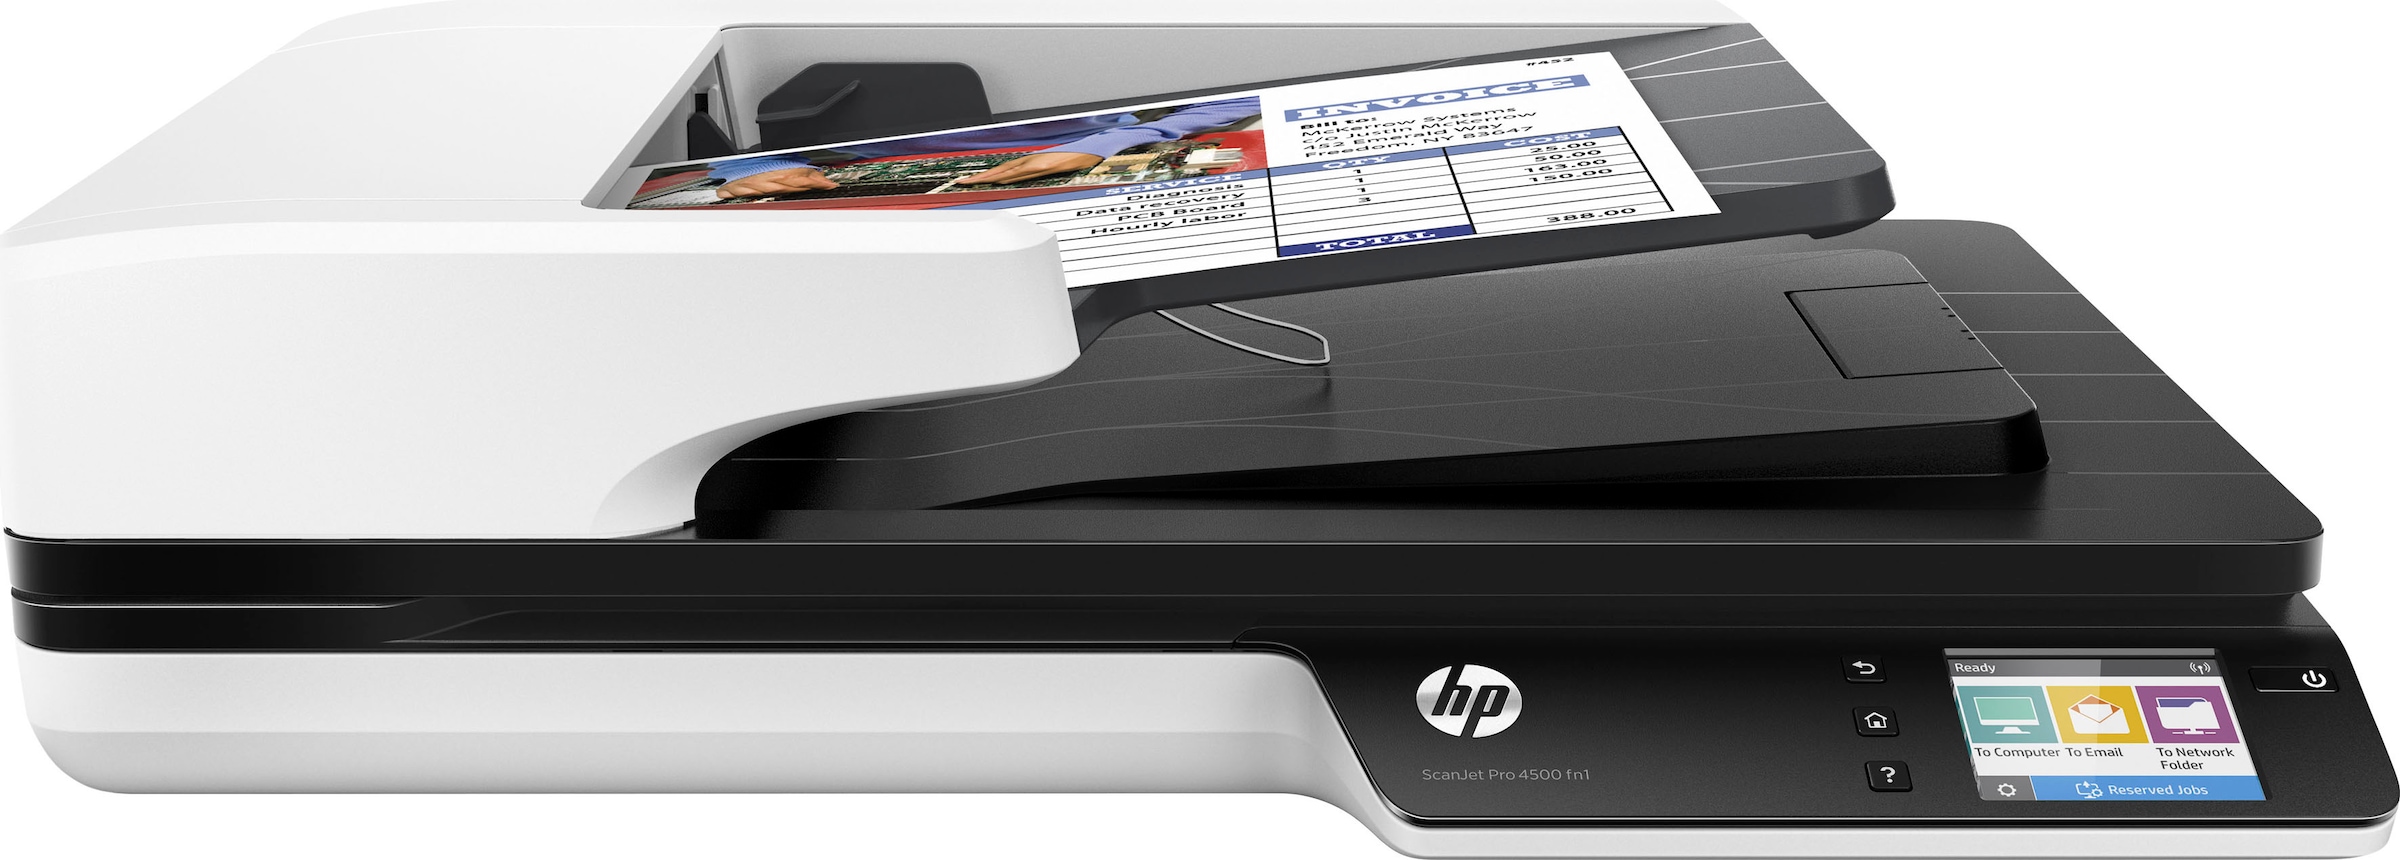 HP Scanner »Scanjet Pro 4500 fn1«